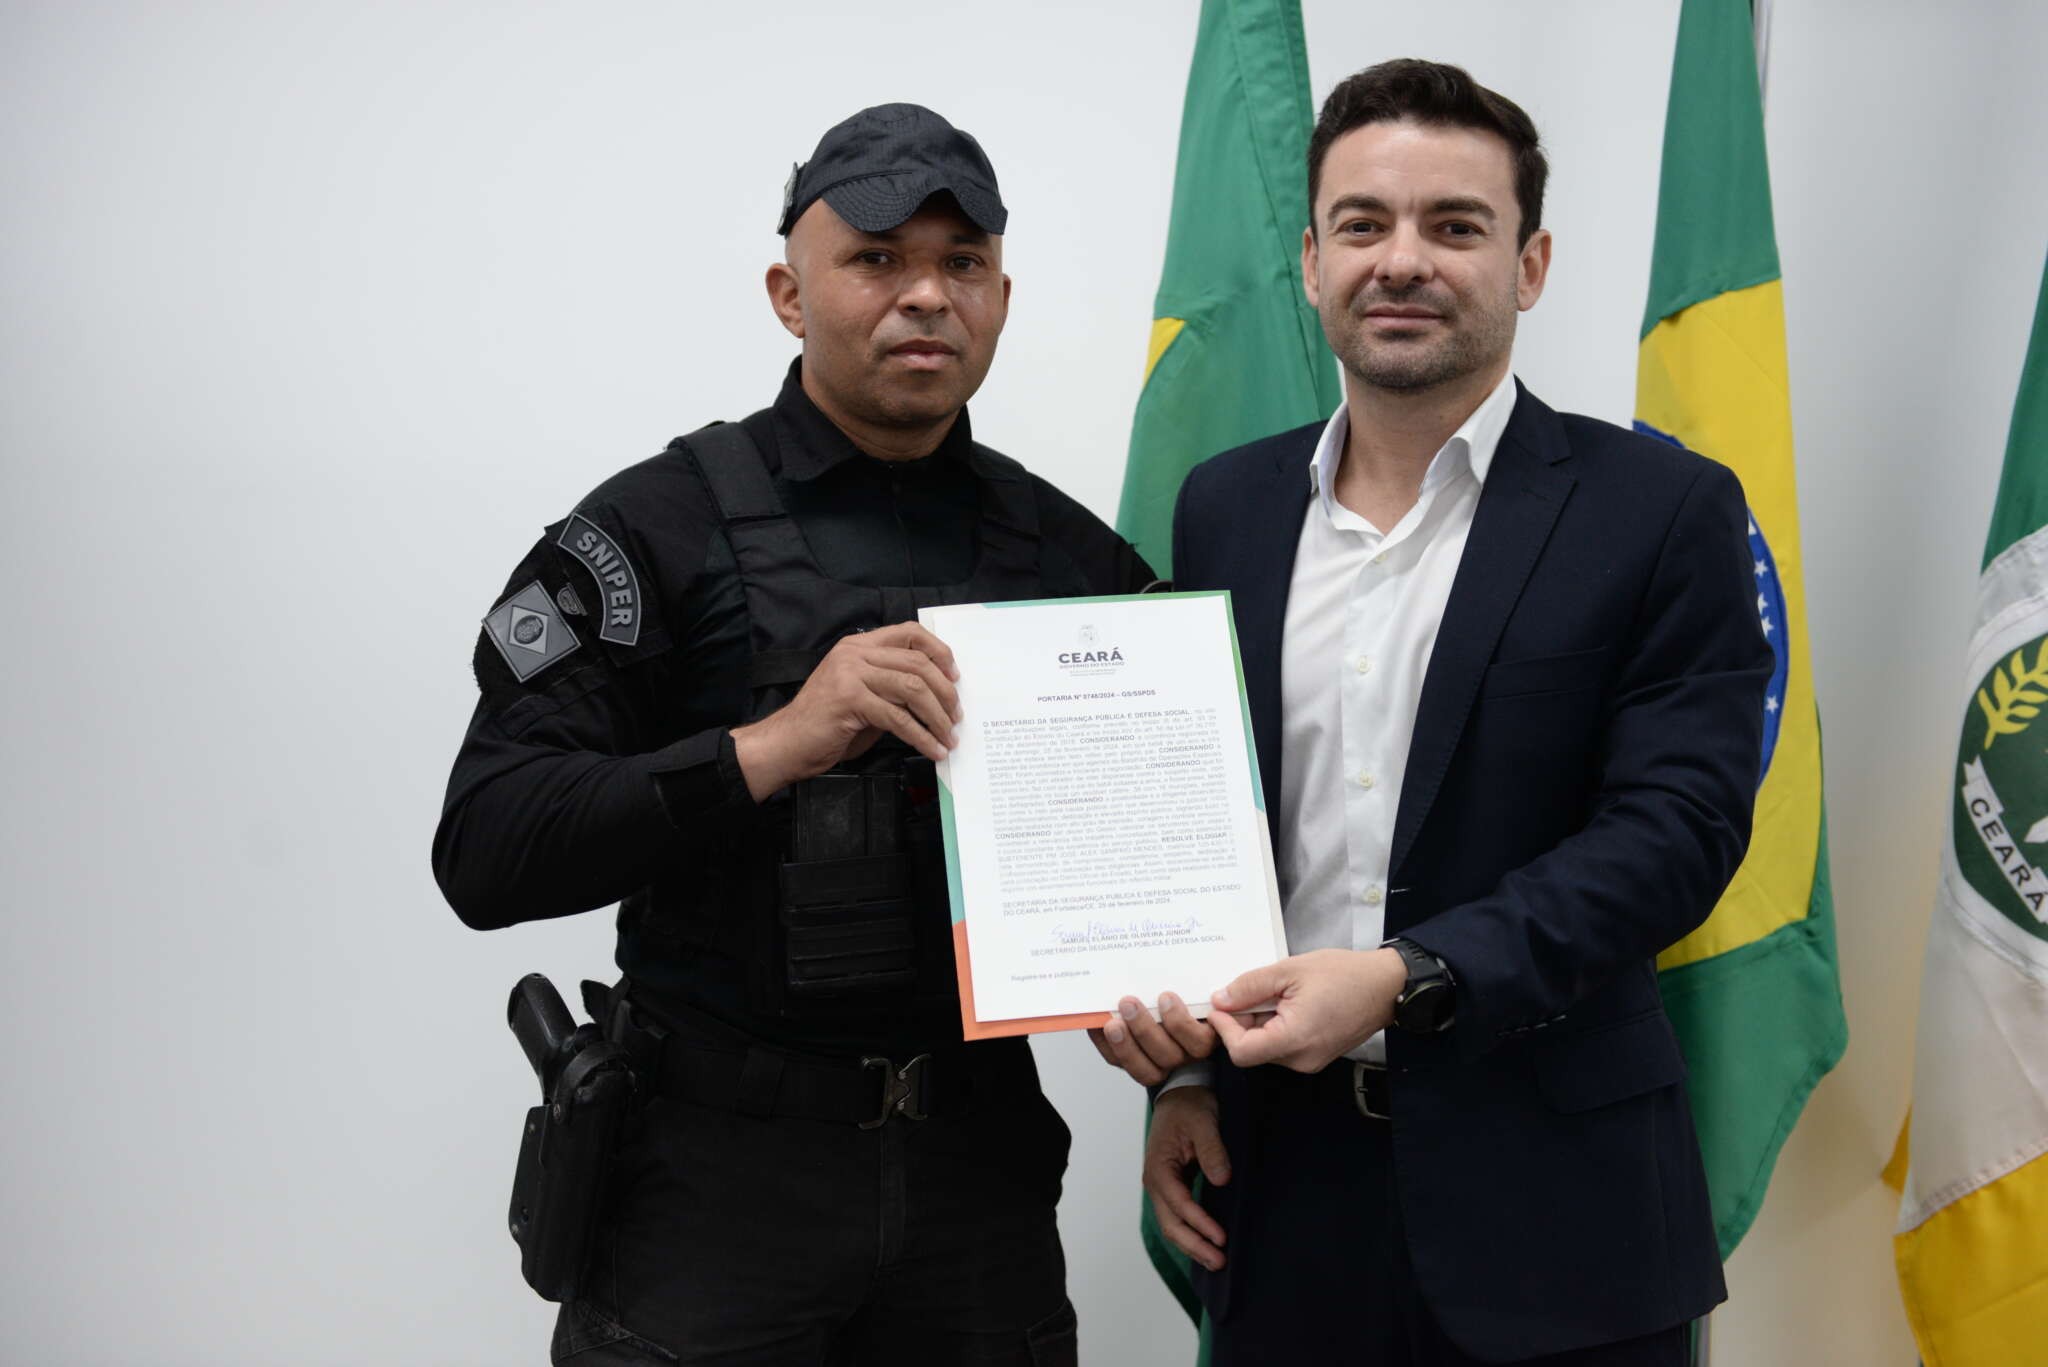 Atirador de elite que atingiu homem armado com filha refém recebe homenagem do governo do Ceará